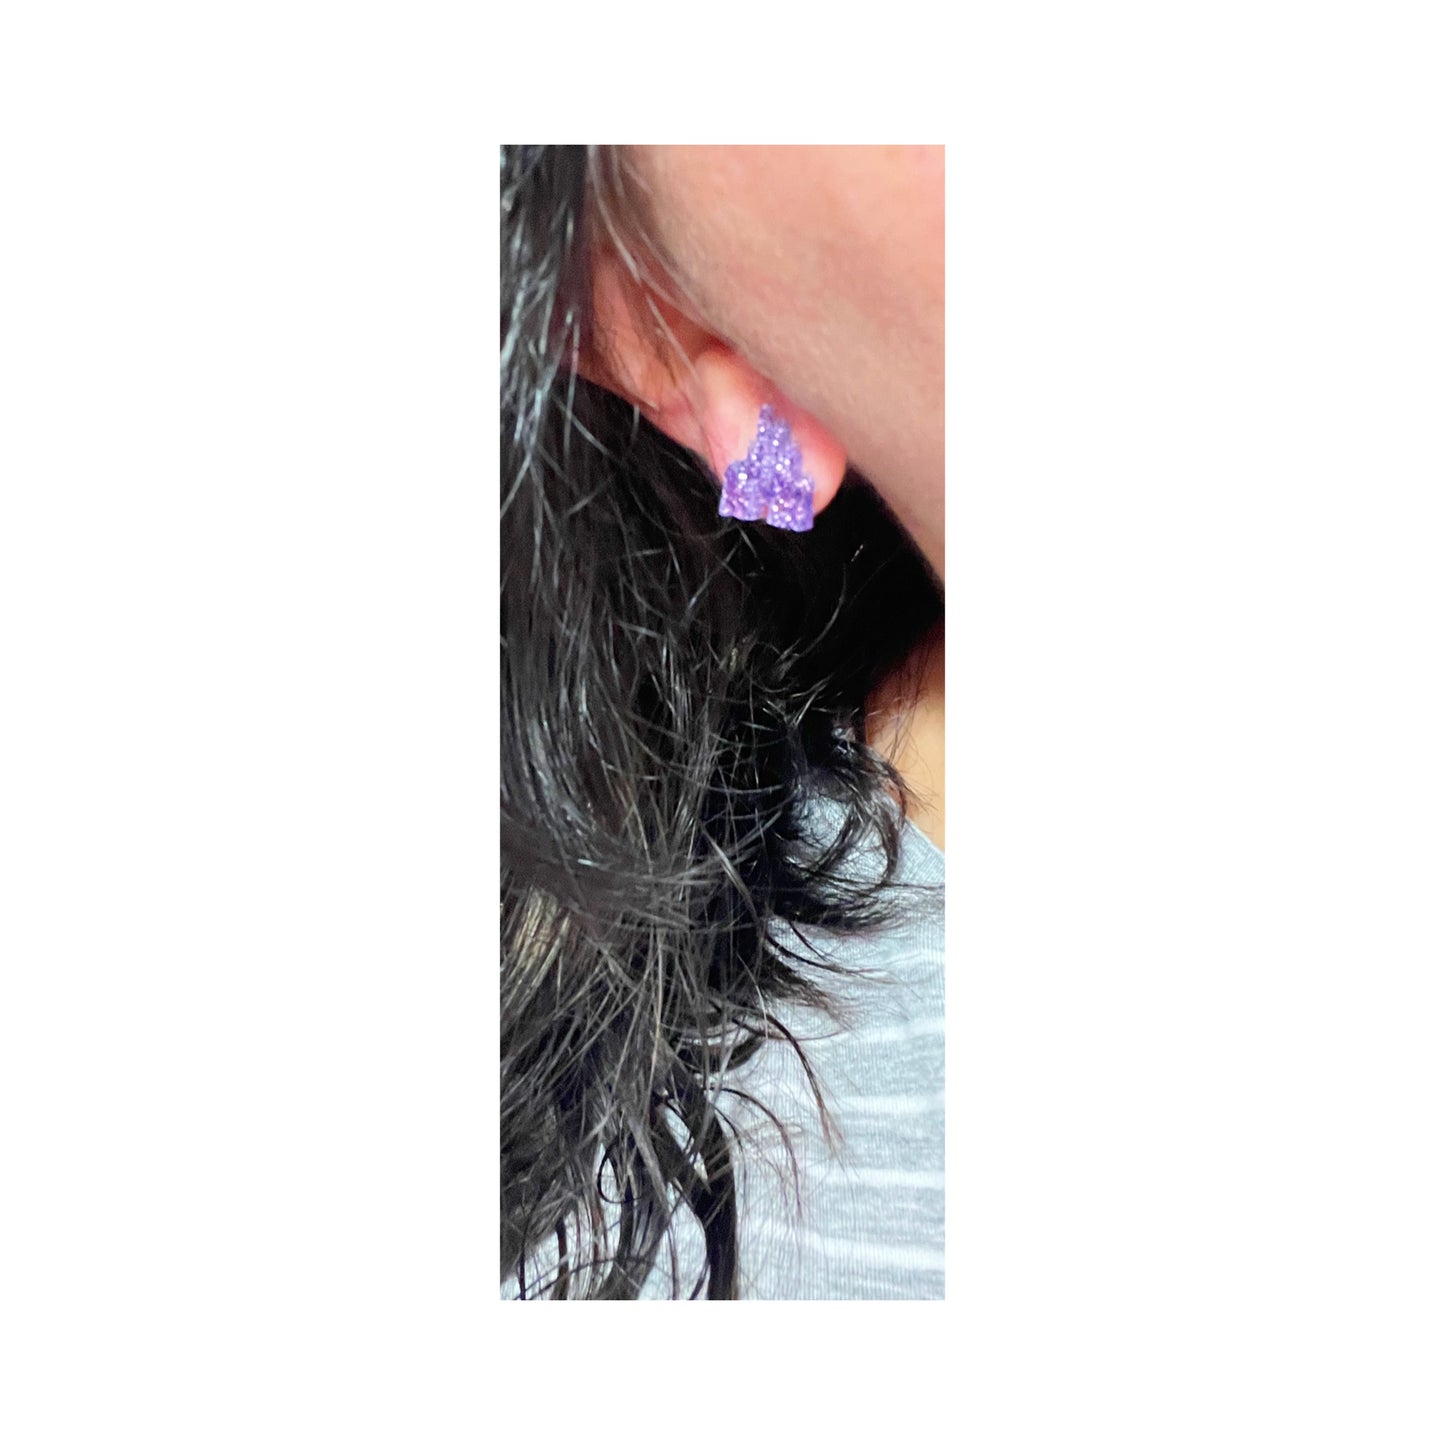 Sparkle Purple Castle Post Earrings